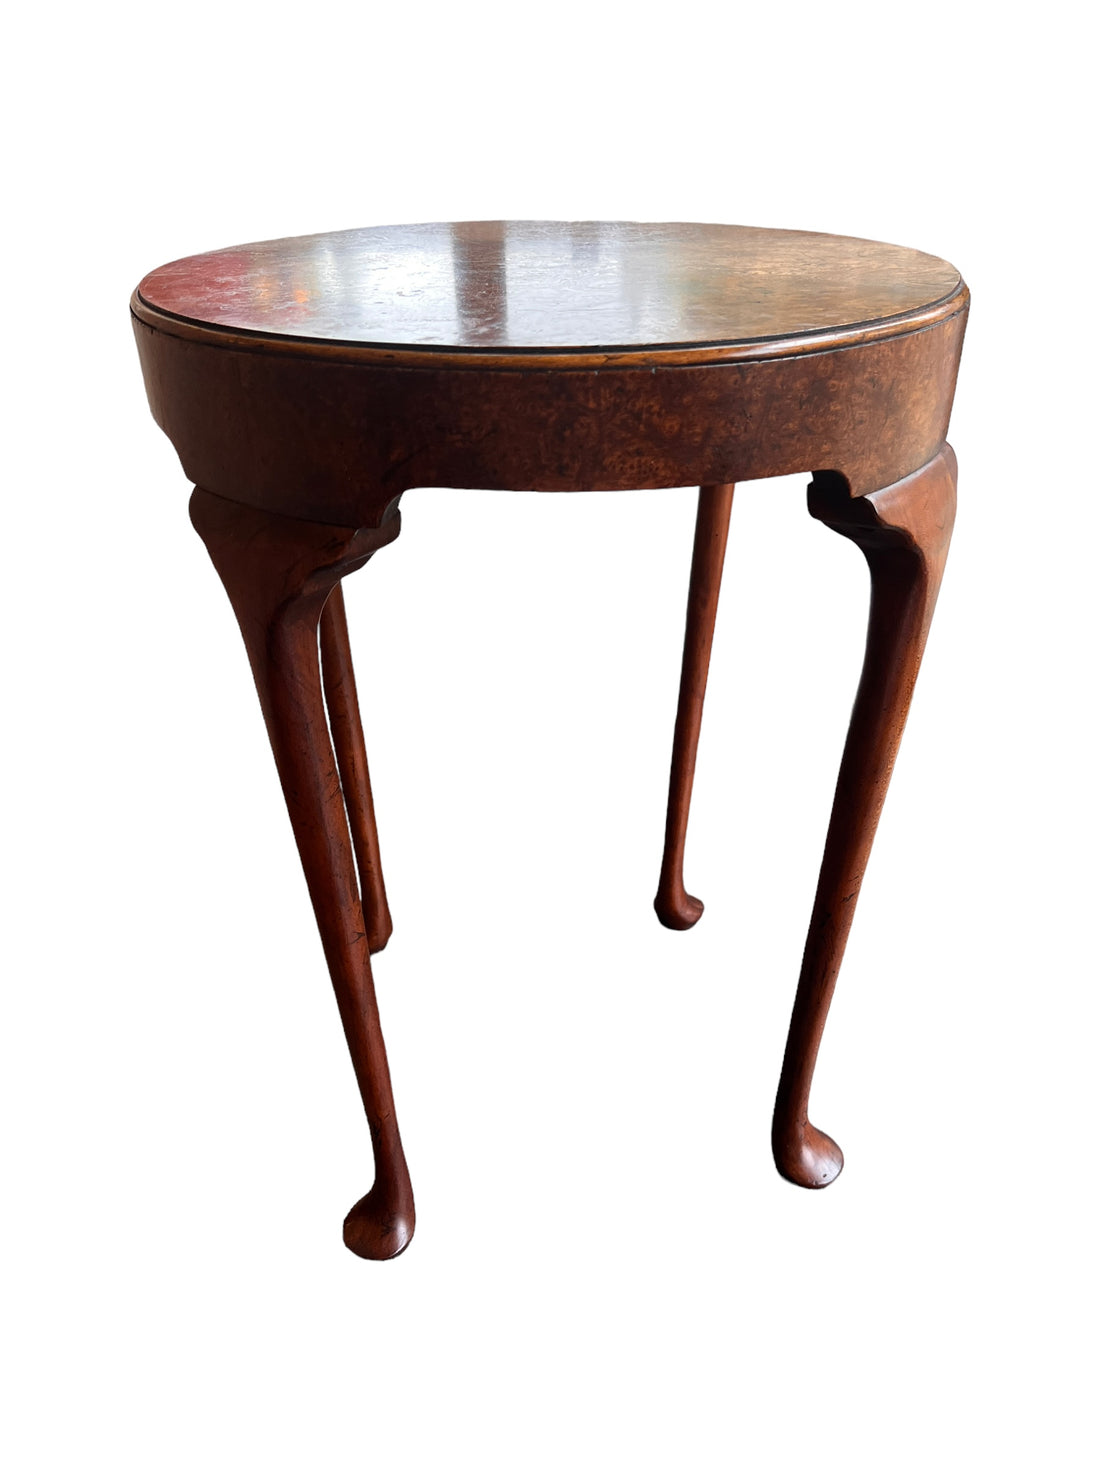 Burlwood Round Table Vintage